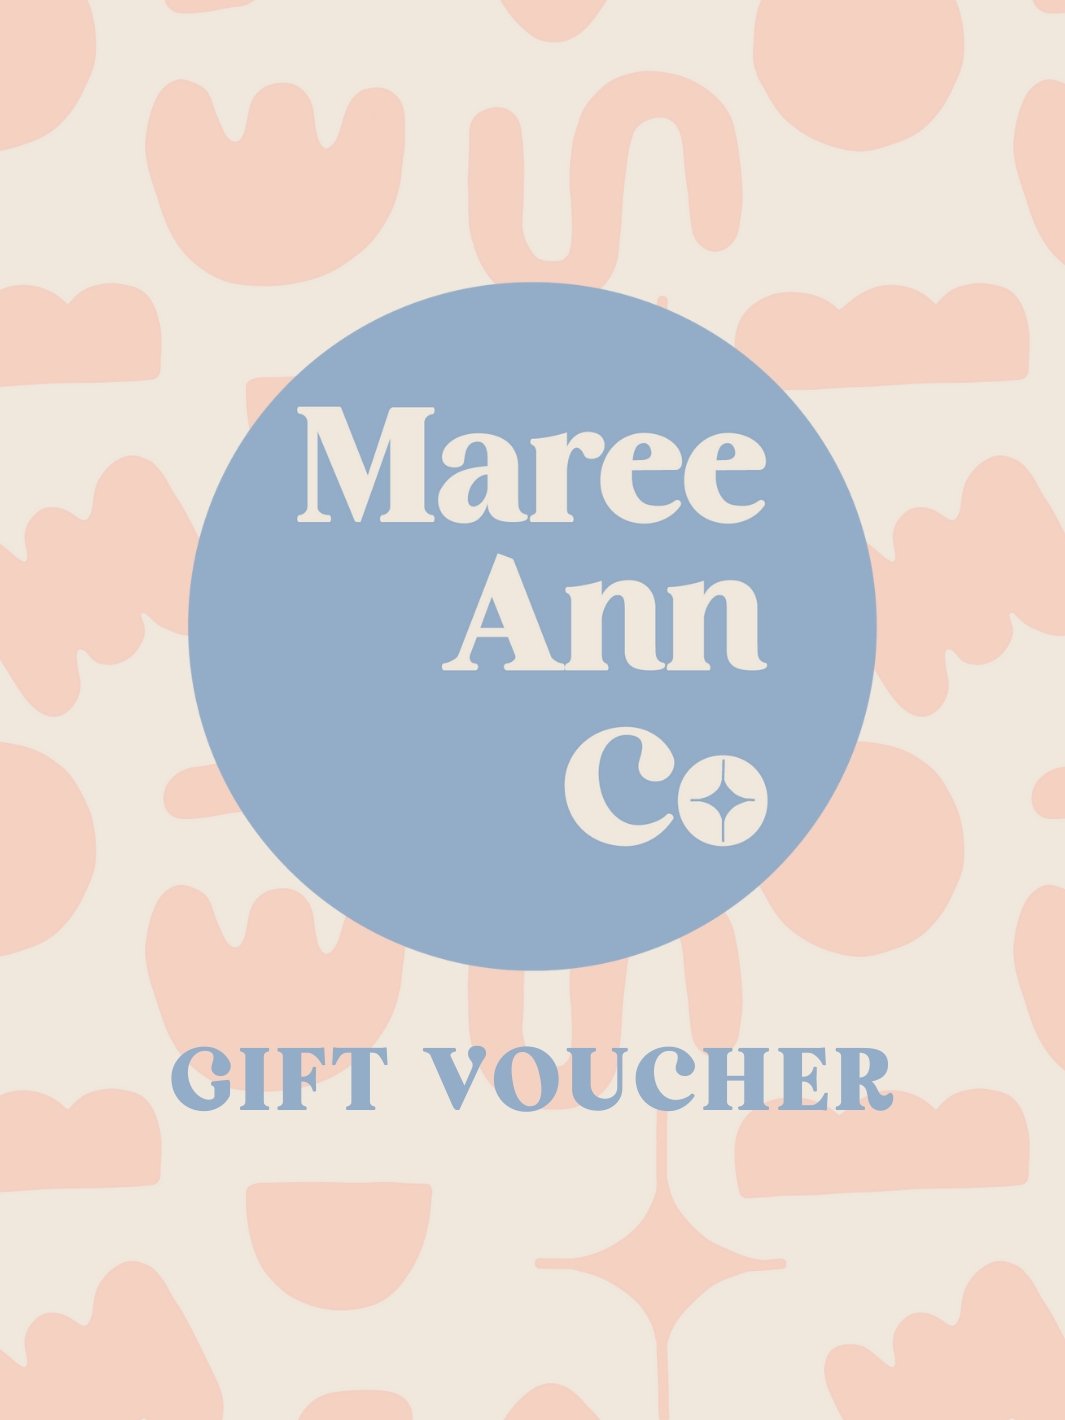 Maree Ann Co Gift Voucher - Maree Ann Co